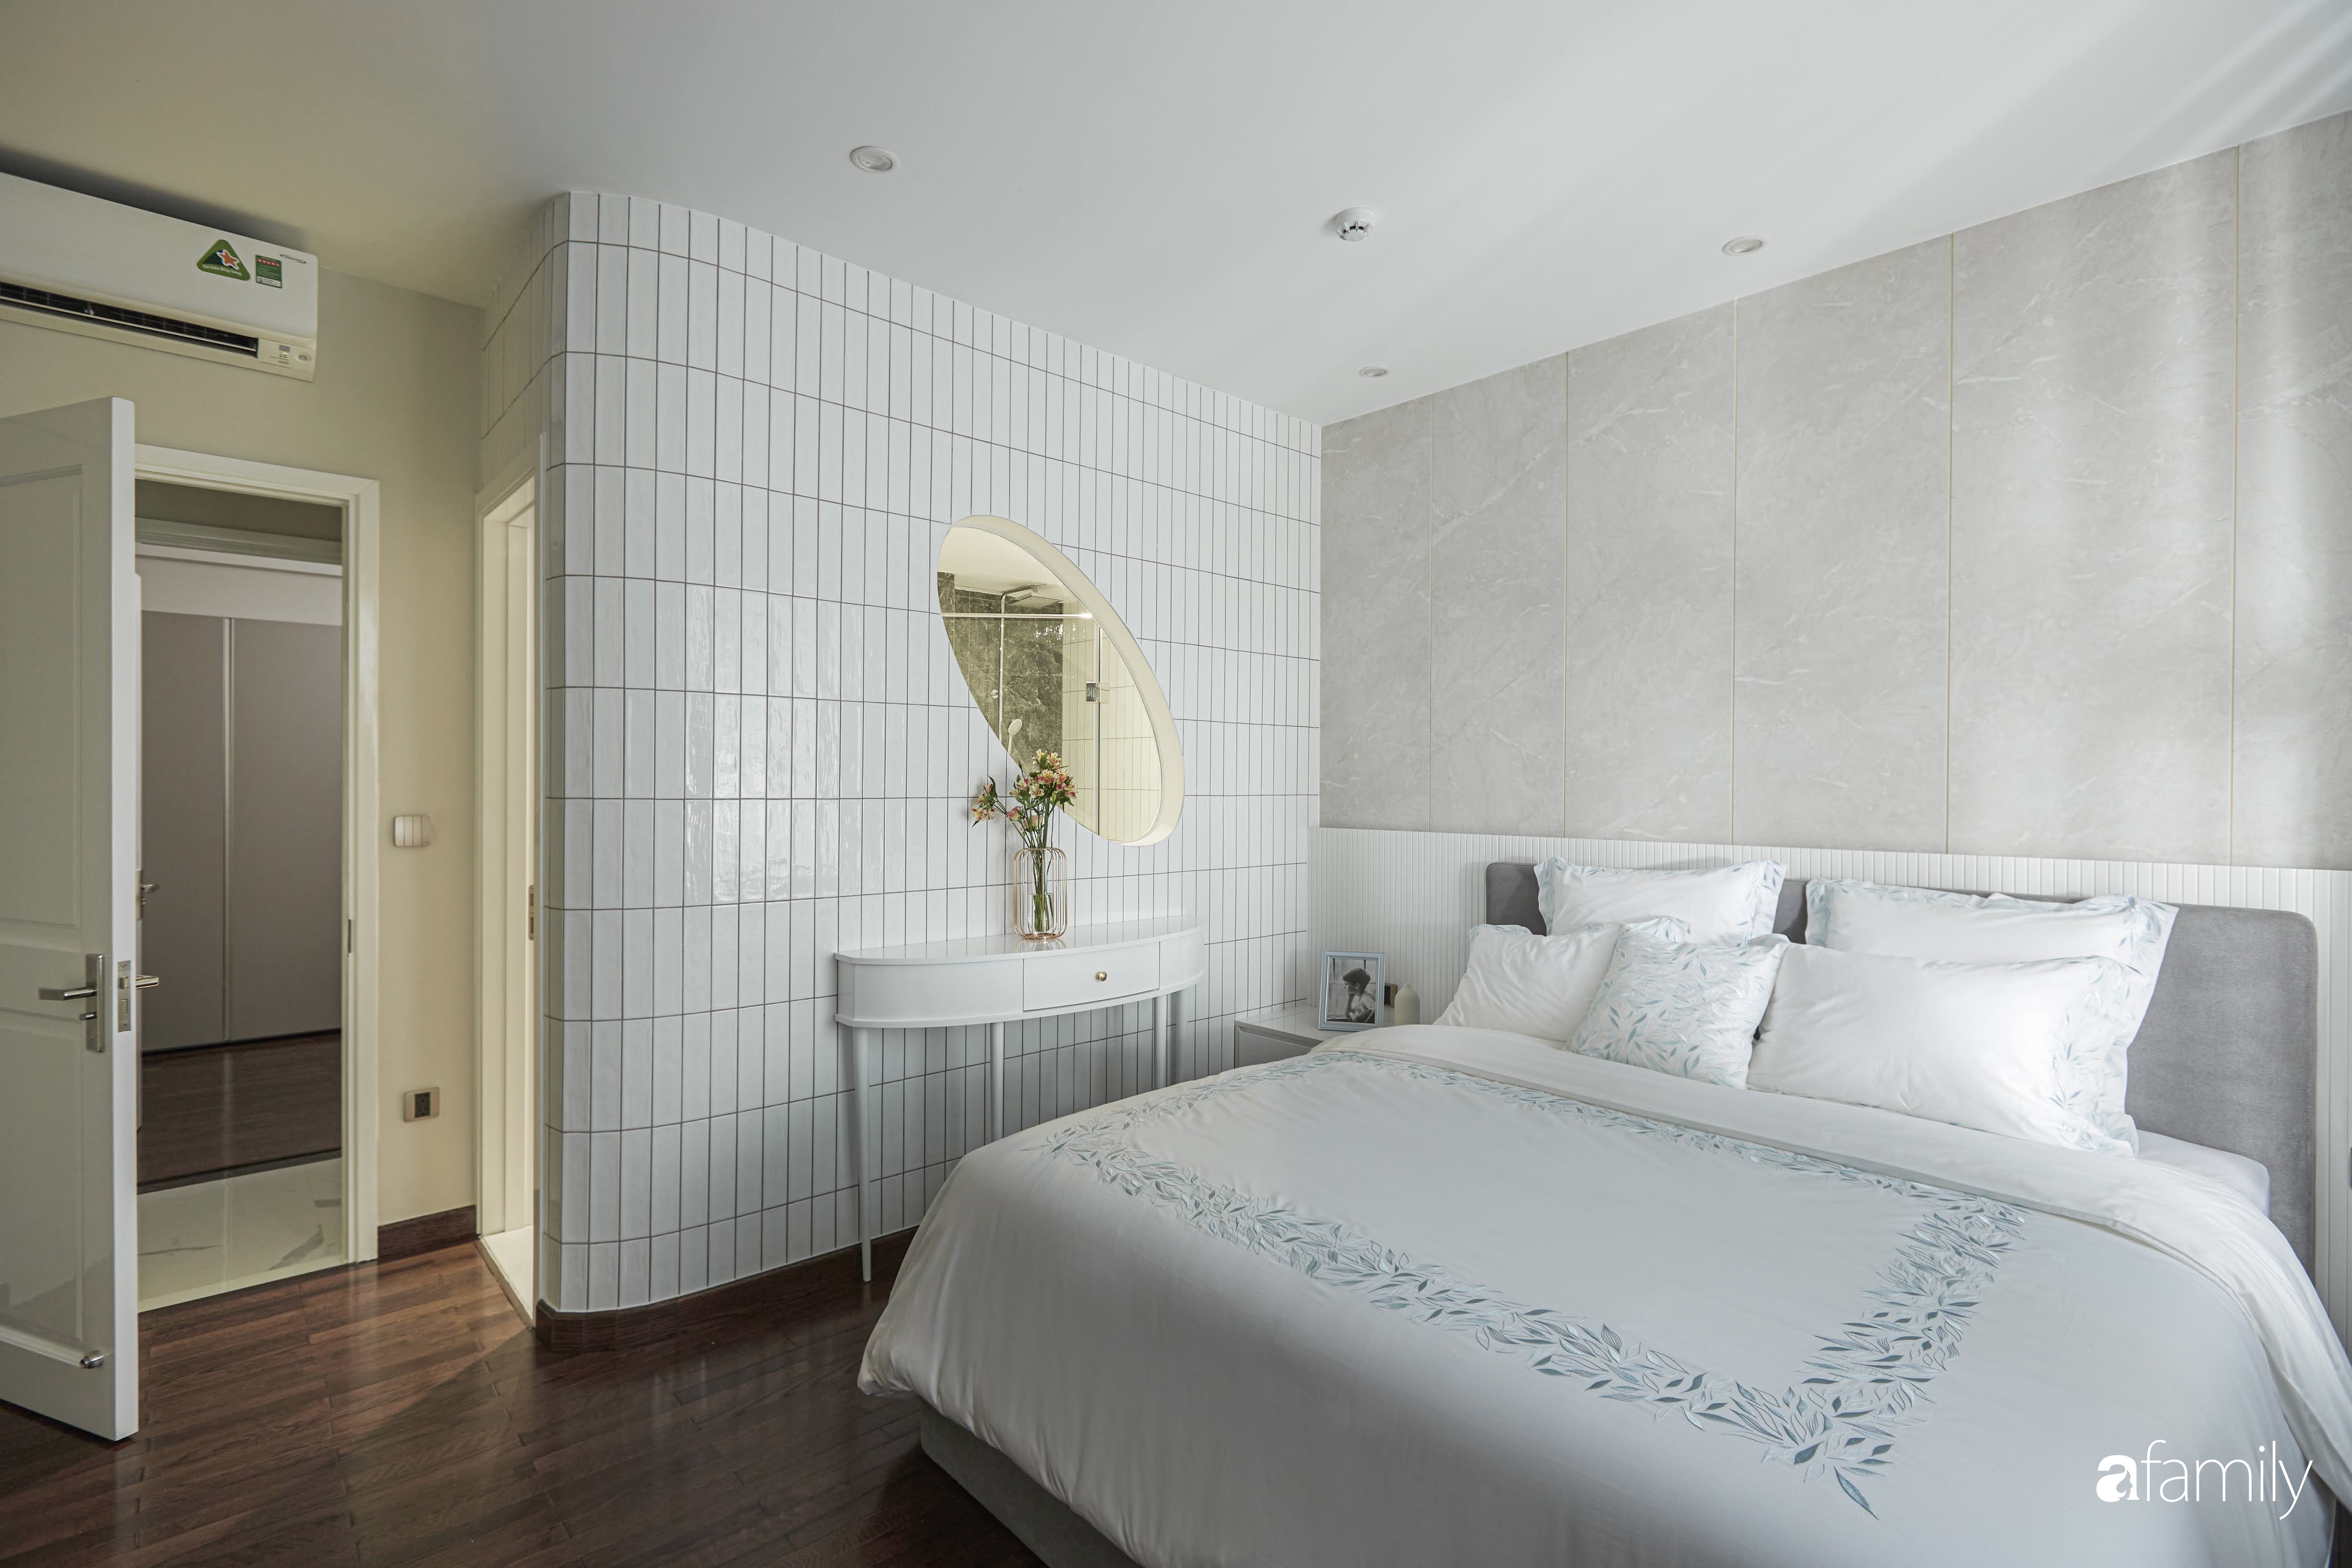 Căn hộ 85m² đẹp sang chảnh với nội thất cao cấp như khách sạn 5 sao ở TP HCM - Ảnh 11.